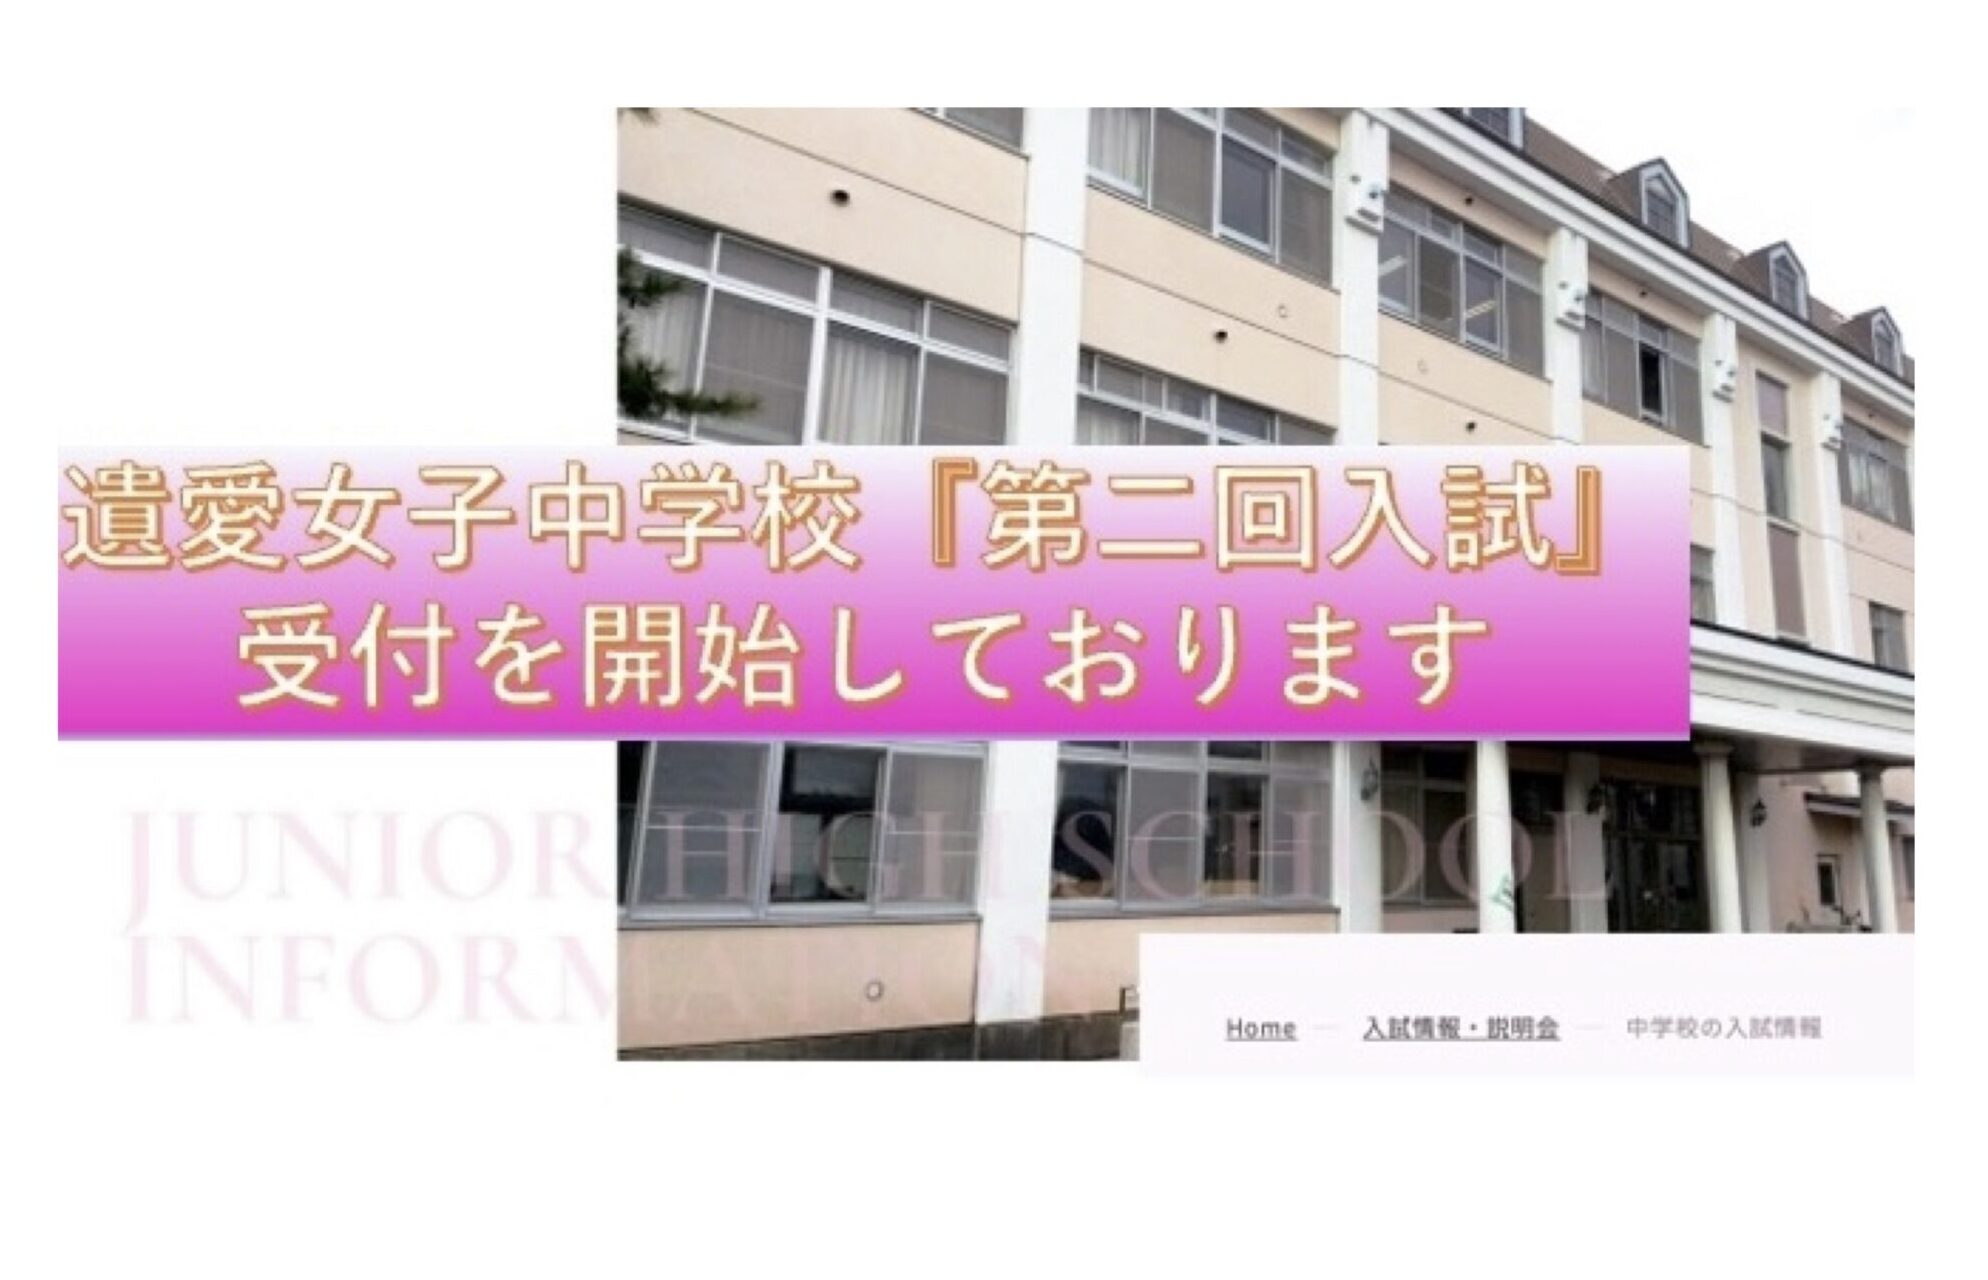 1月7日より遺愛女子中学校『第二回入学試験（特別試験）』の受付は終了いたしました。